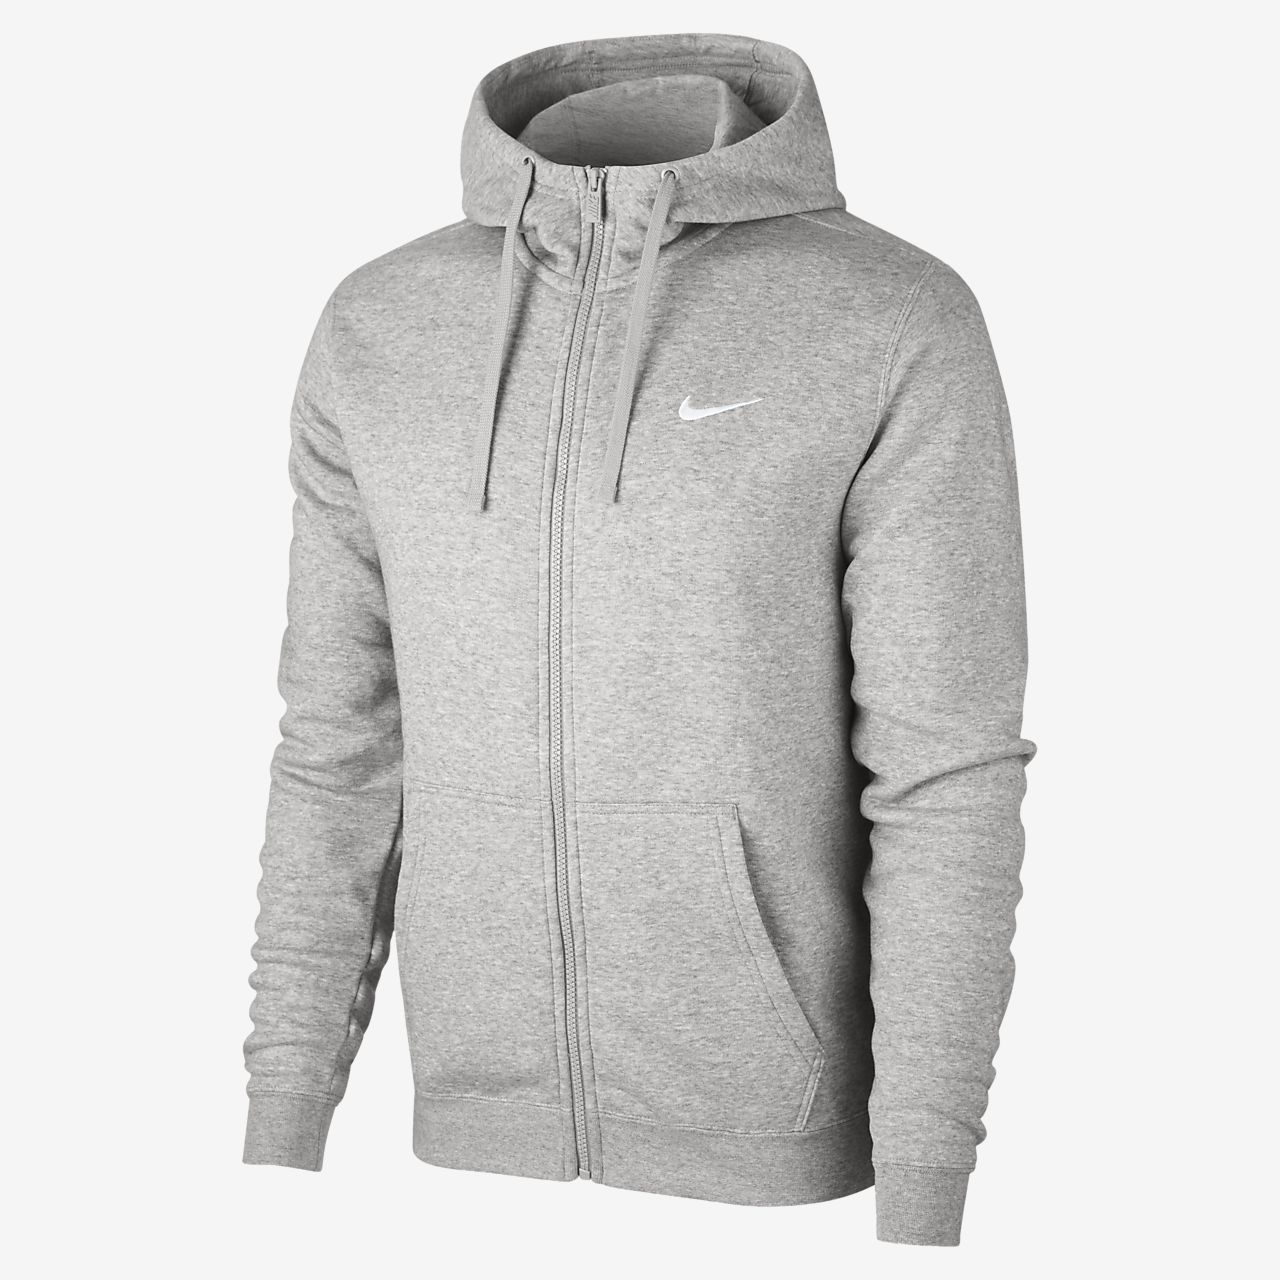 nike zip up hoodie grey